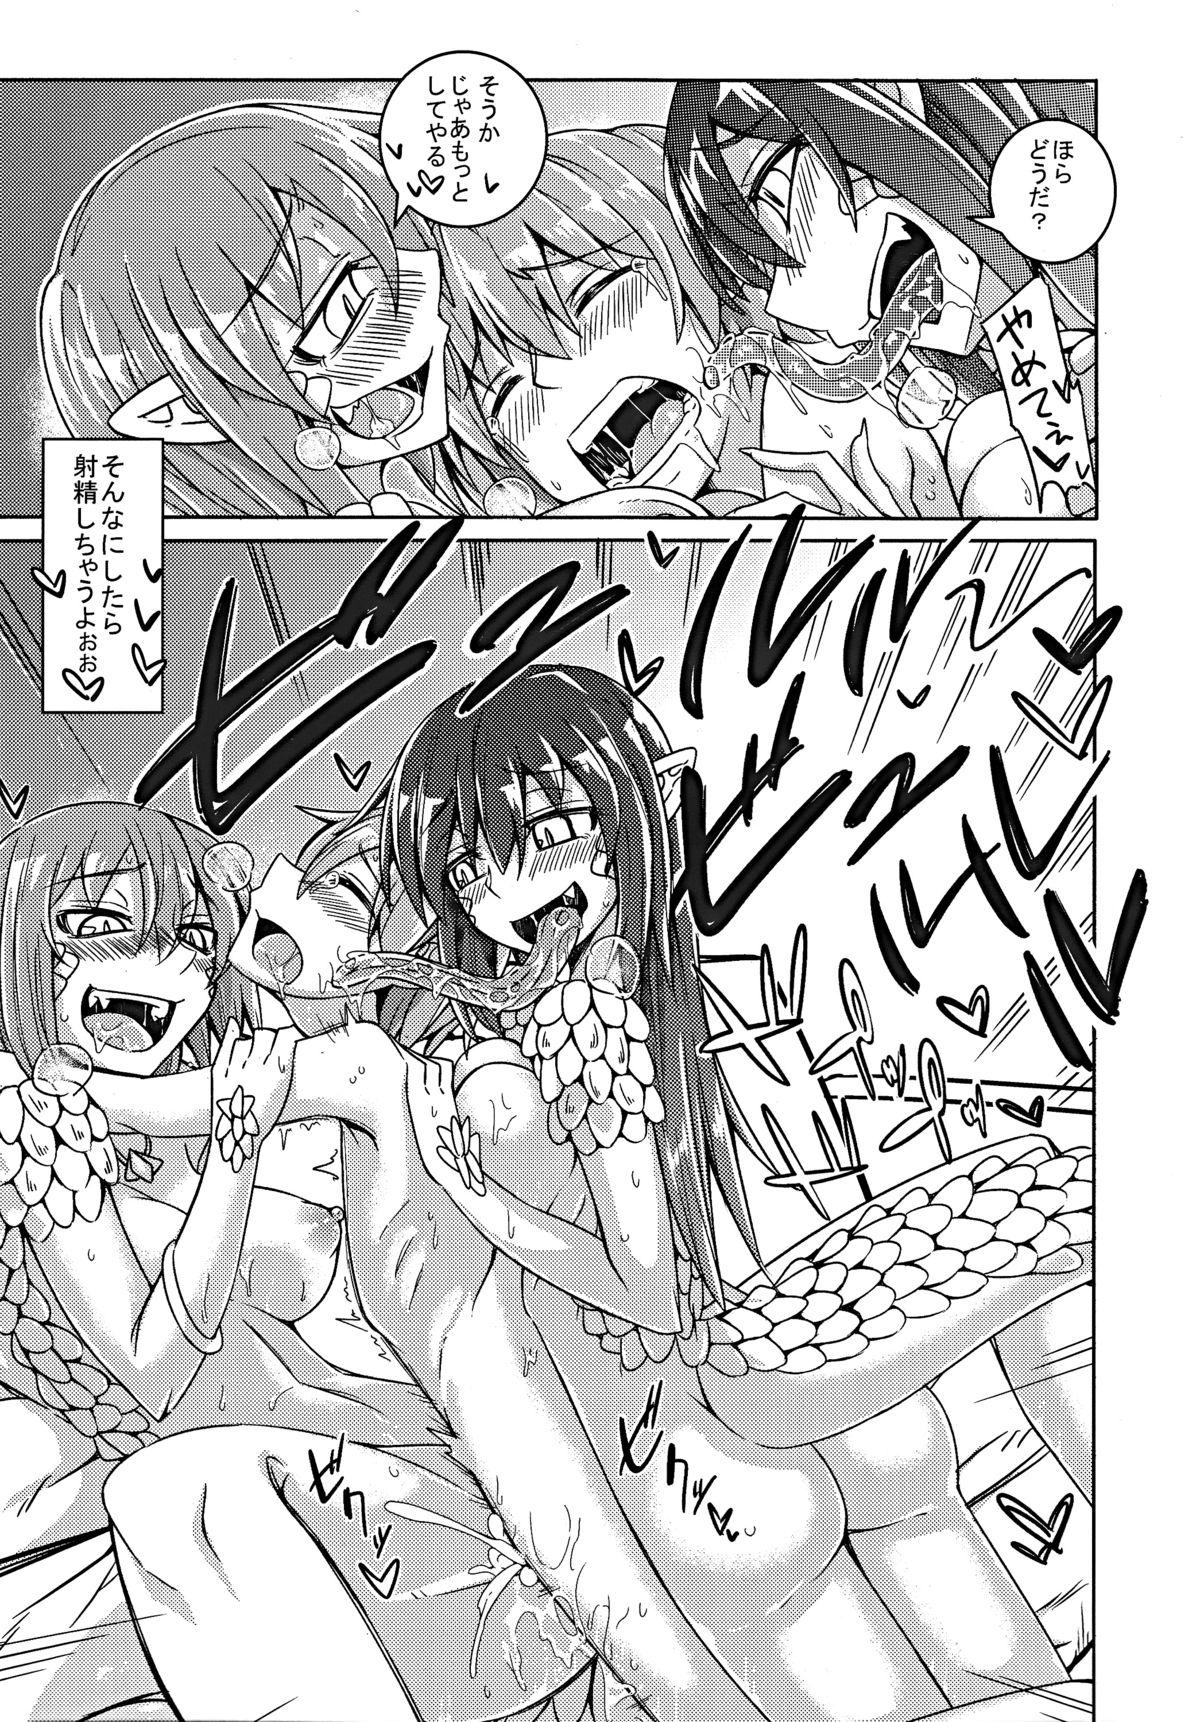 Booty Watashi no Koibito o Shoukai Shimasu! EX5 - Monster girl quest  - Page 12